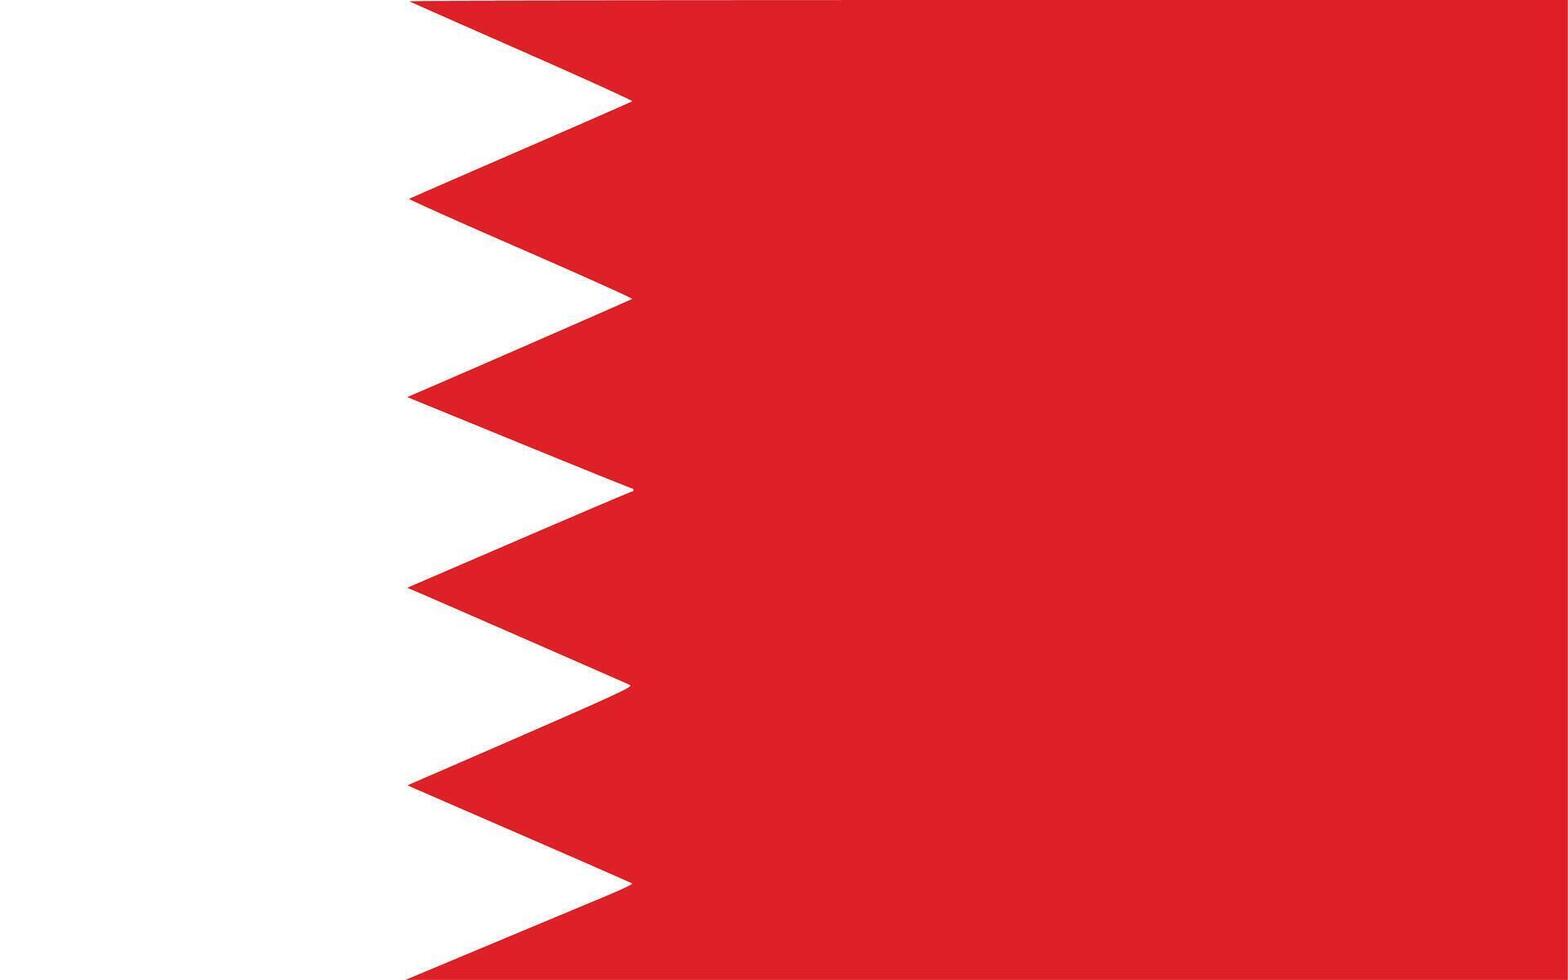 The national flag of bahrain vector